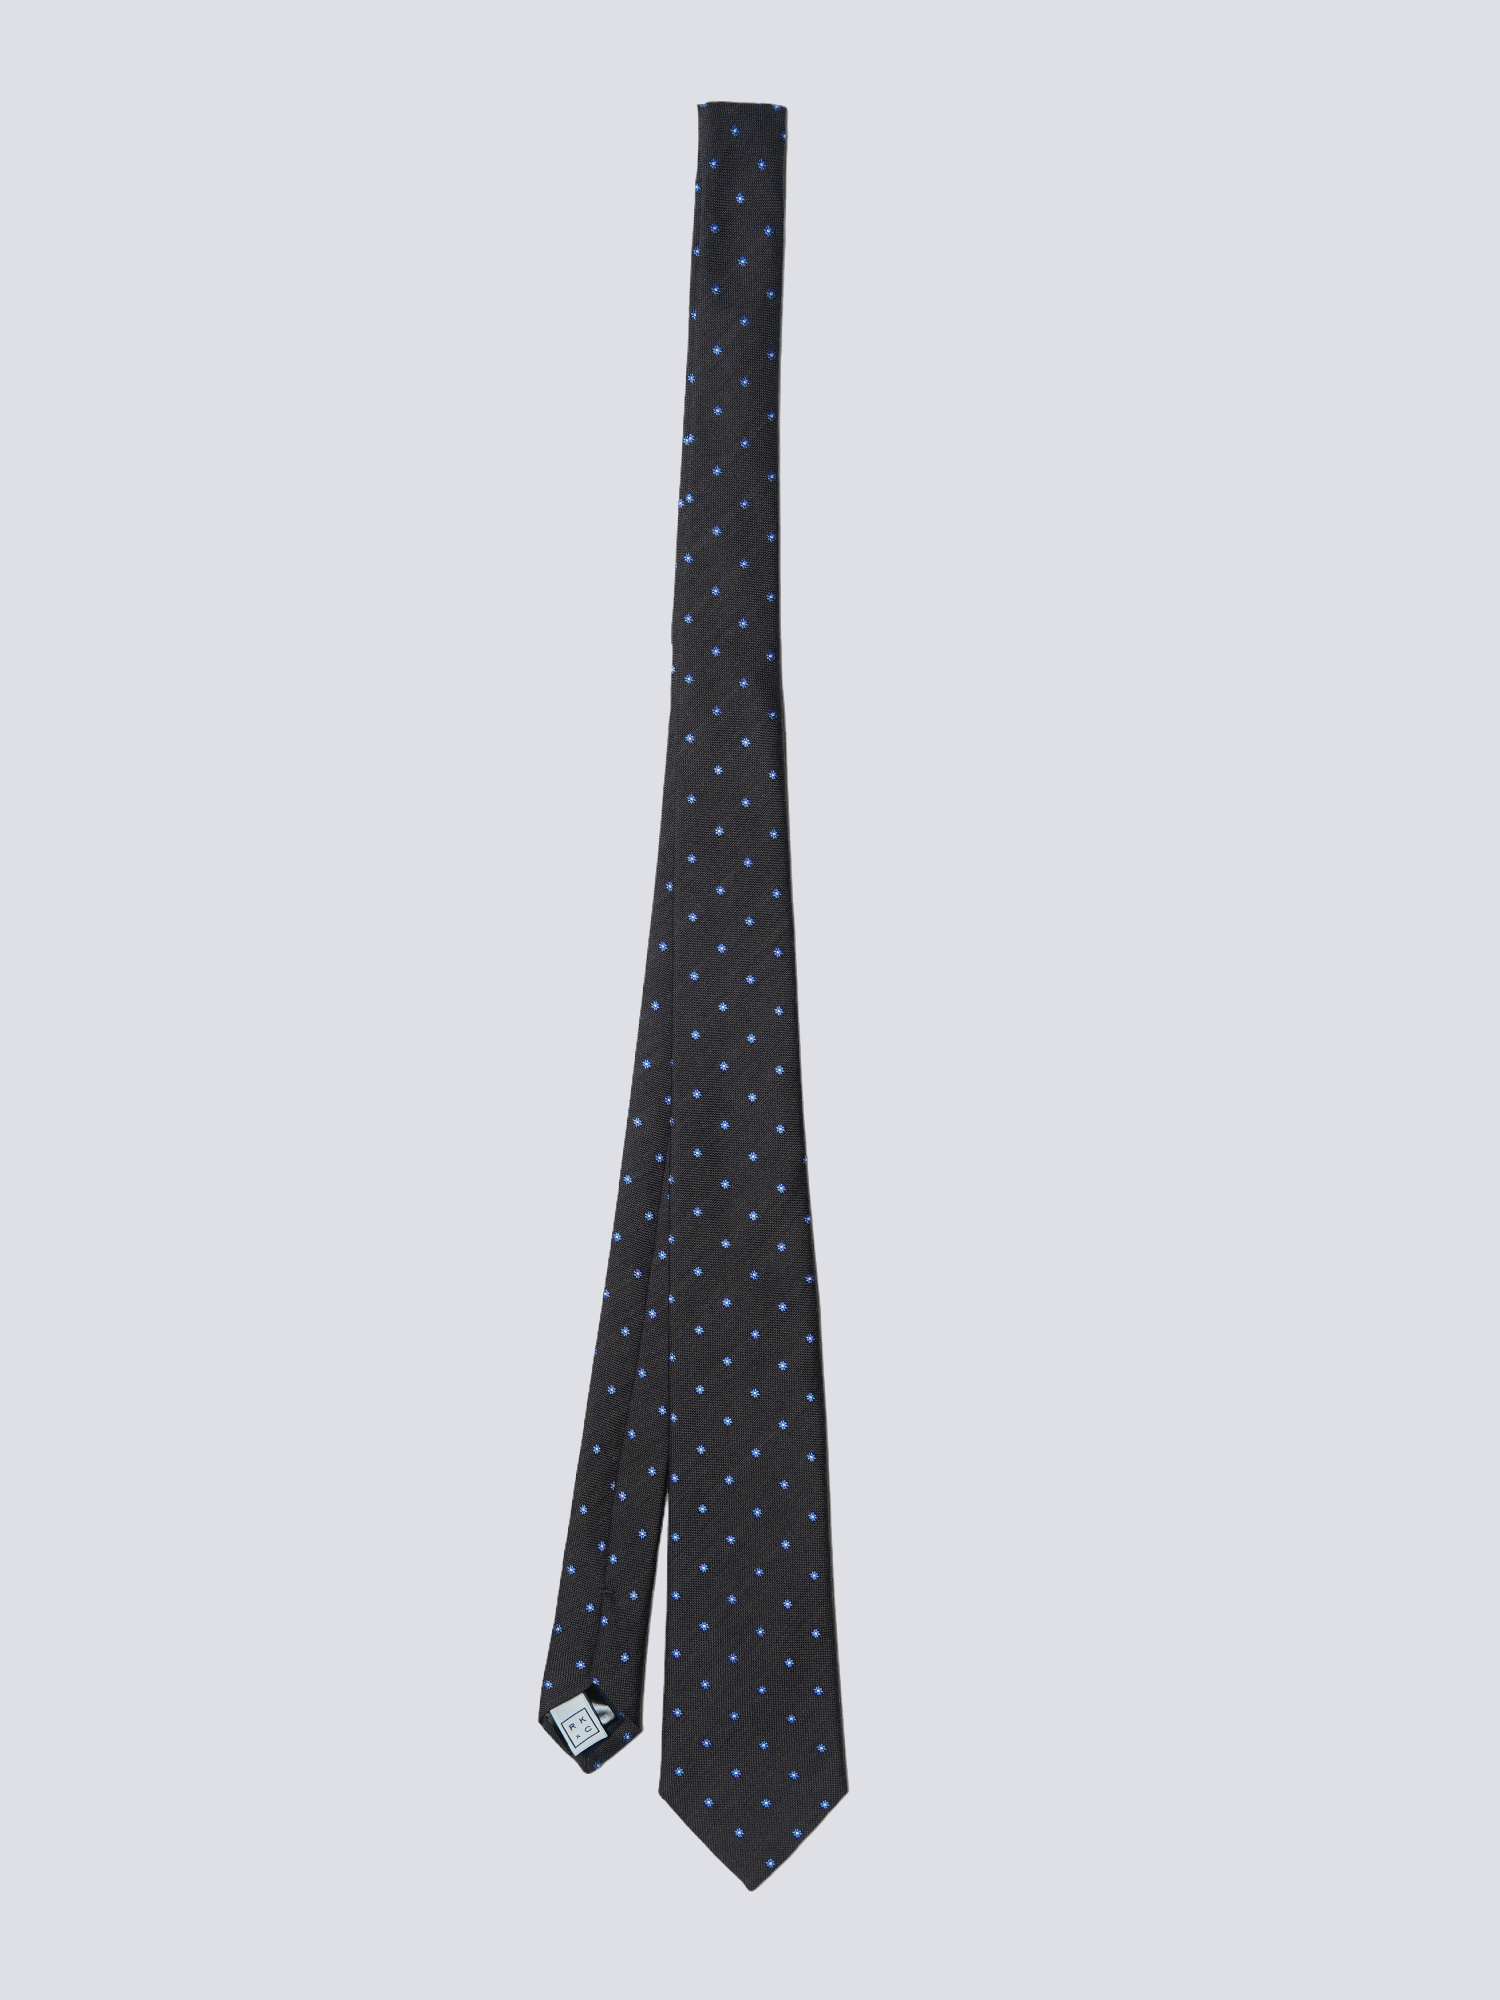 Chokore Bloomen (Brown) Necktie